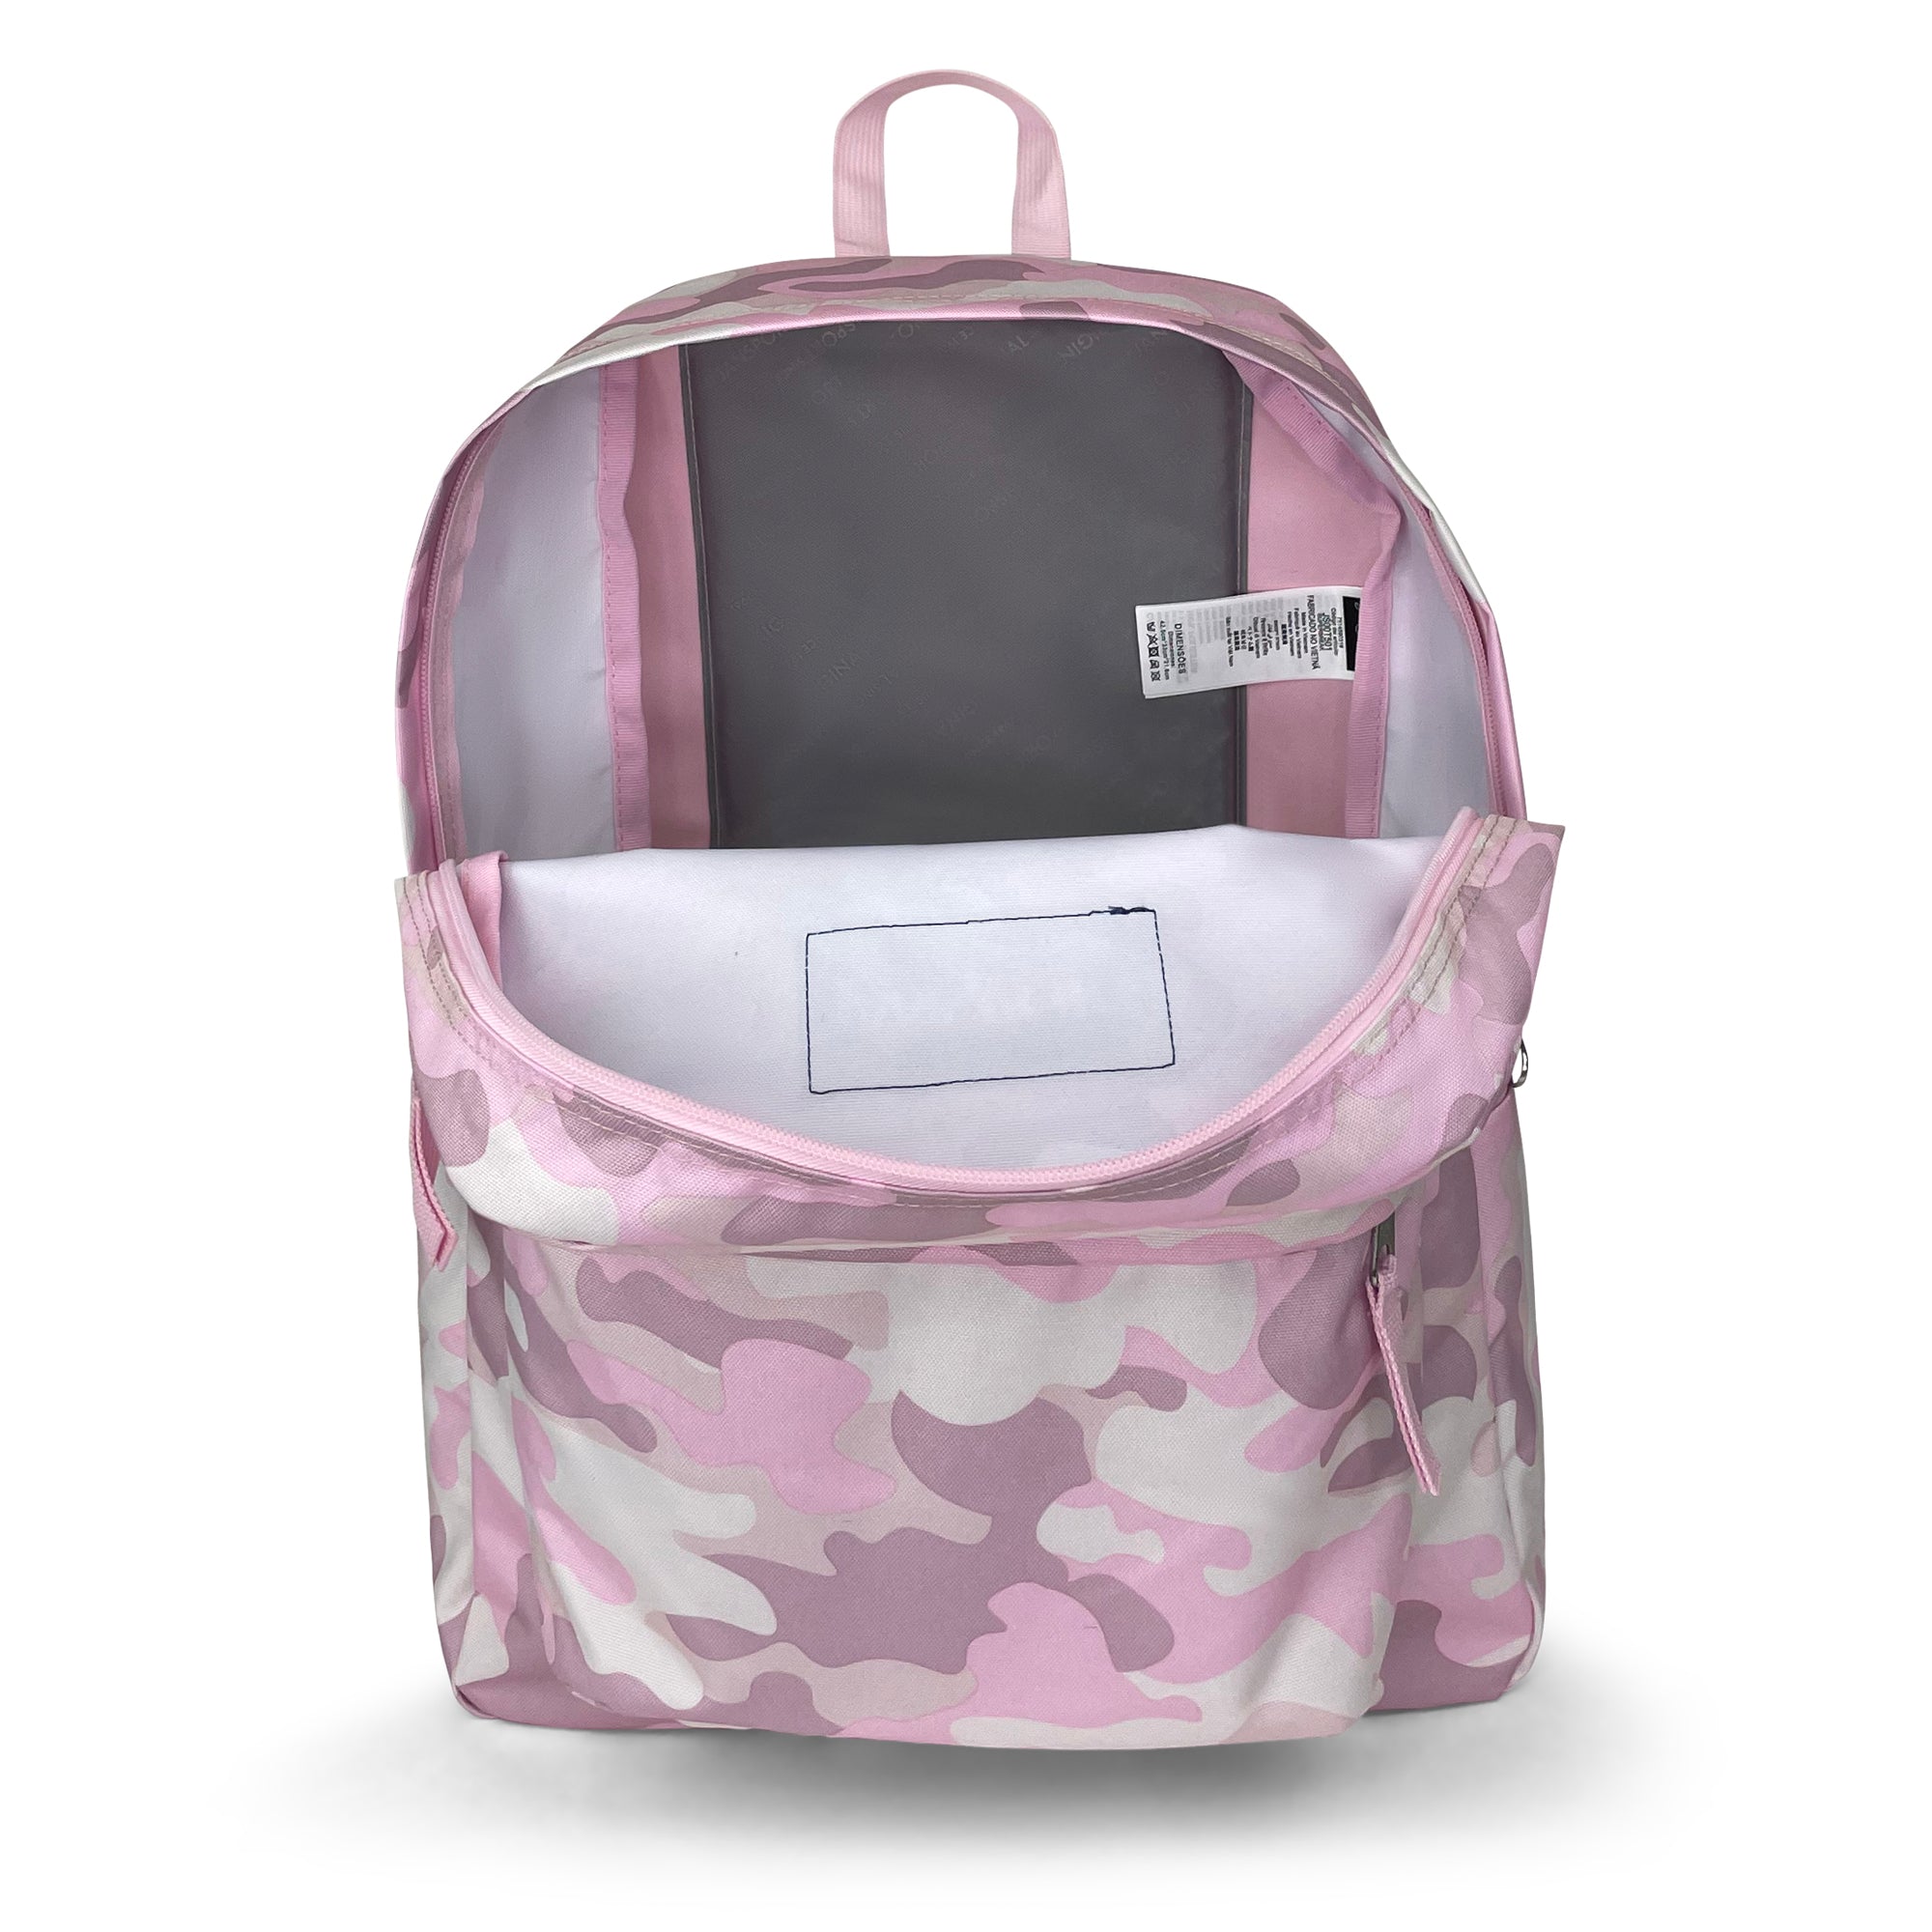 Superbreak Backpack-Backpack-Jansport-Cotton Candy Camo-SchoolBagsAndStuff